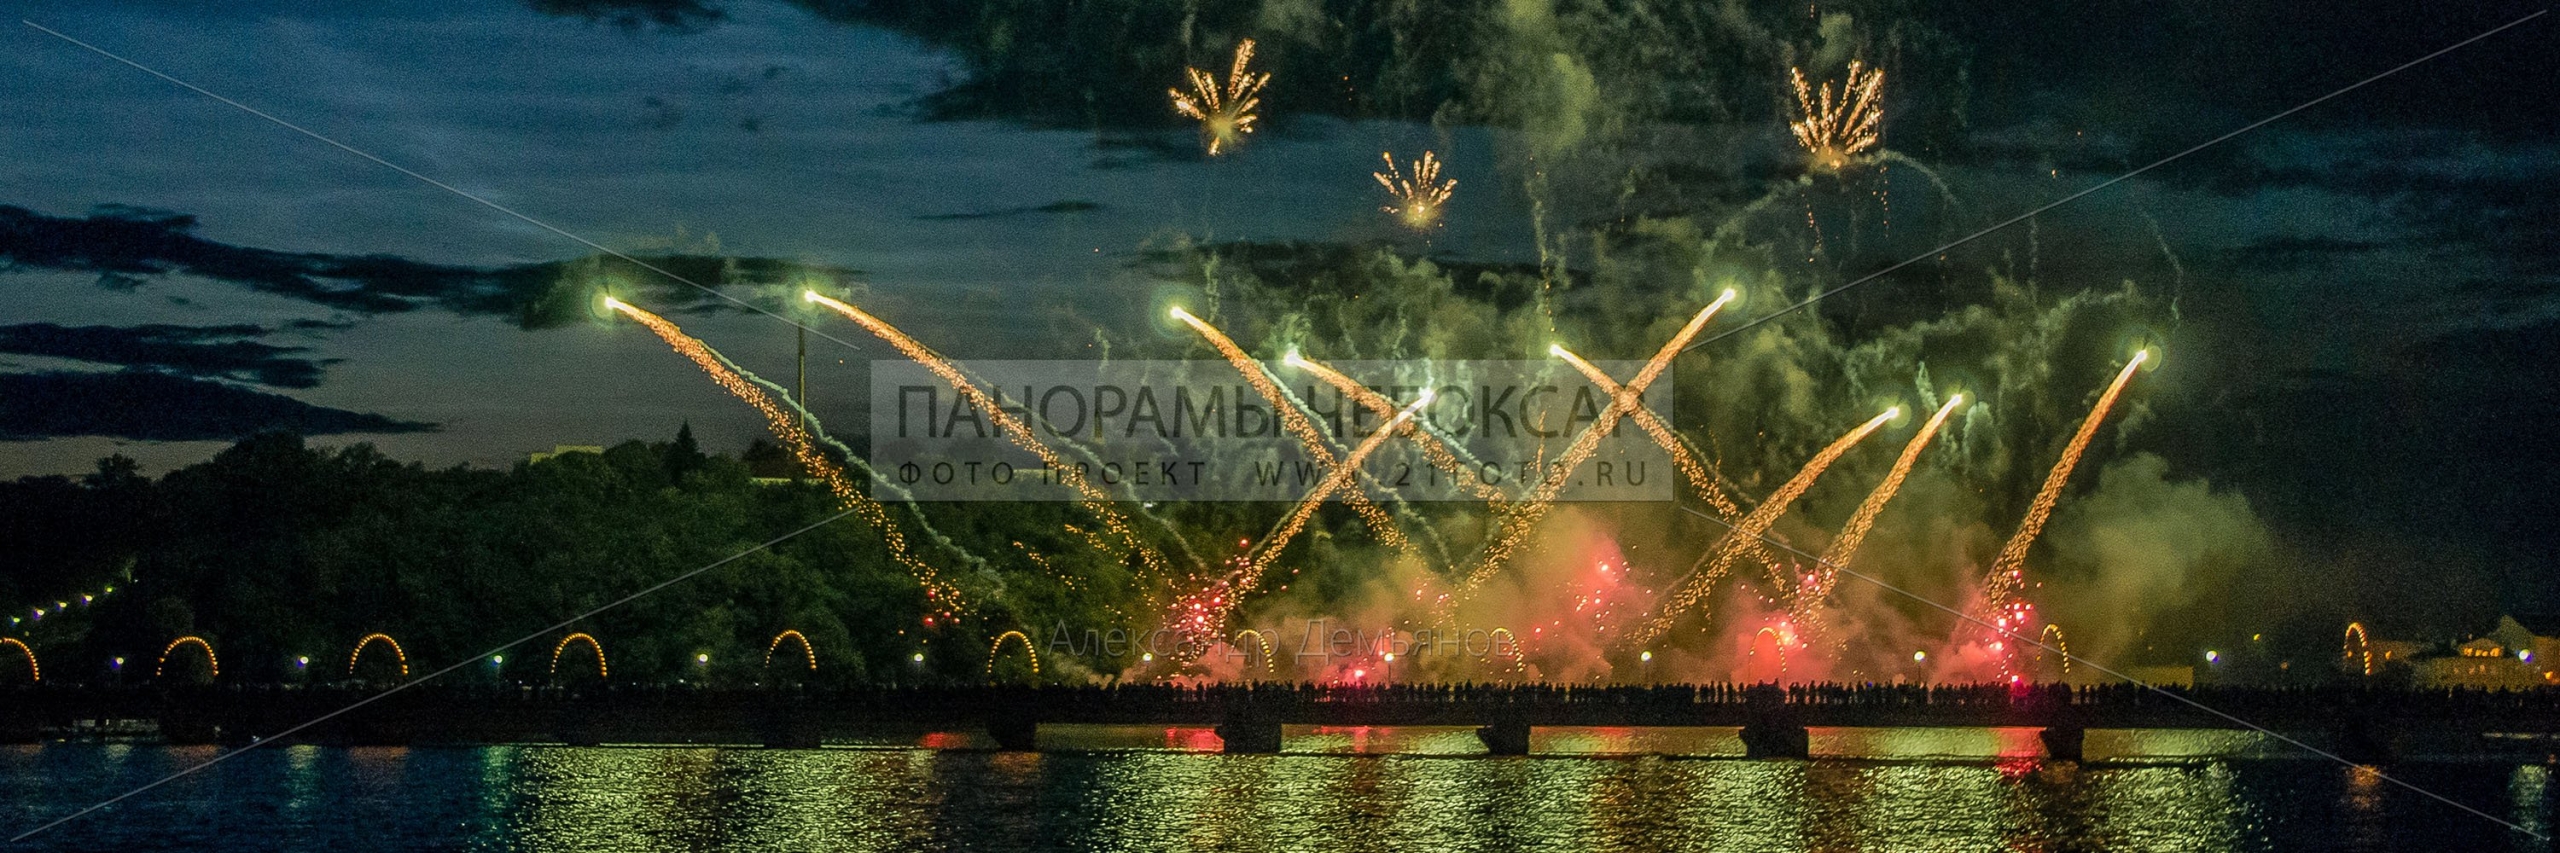 День республики 2014 Фестиваль фейерверков